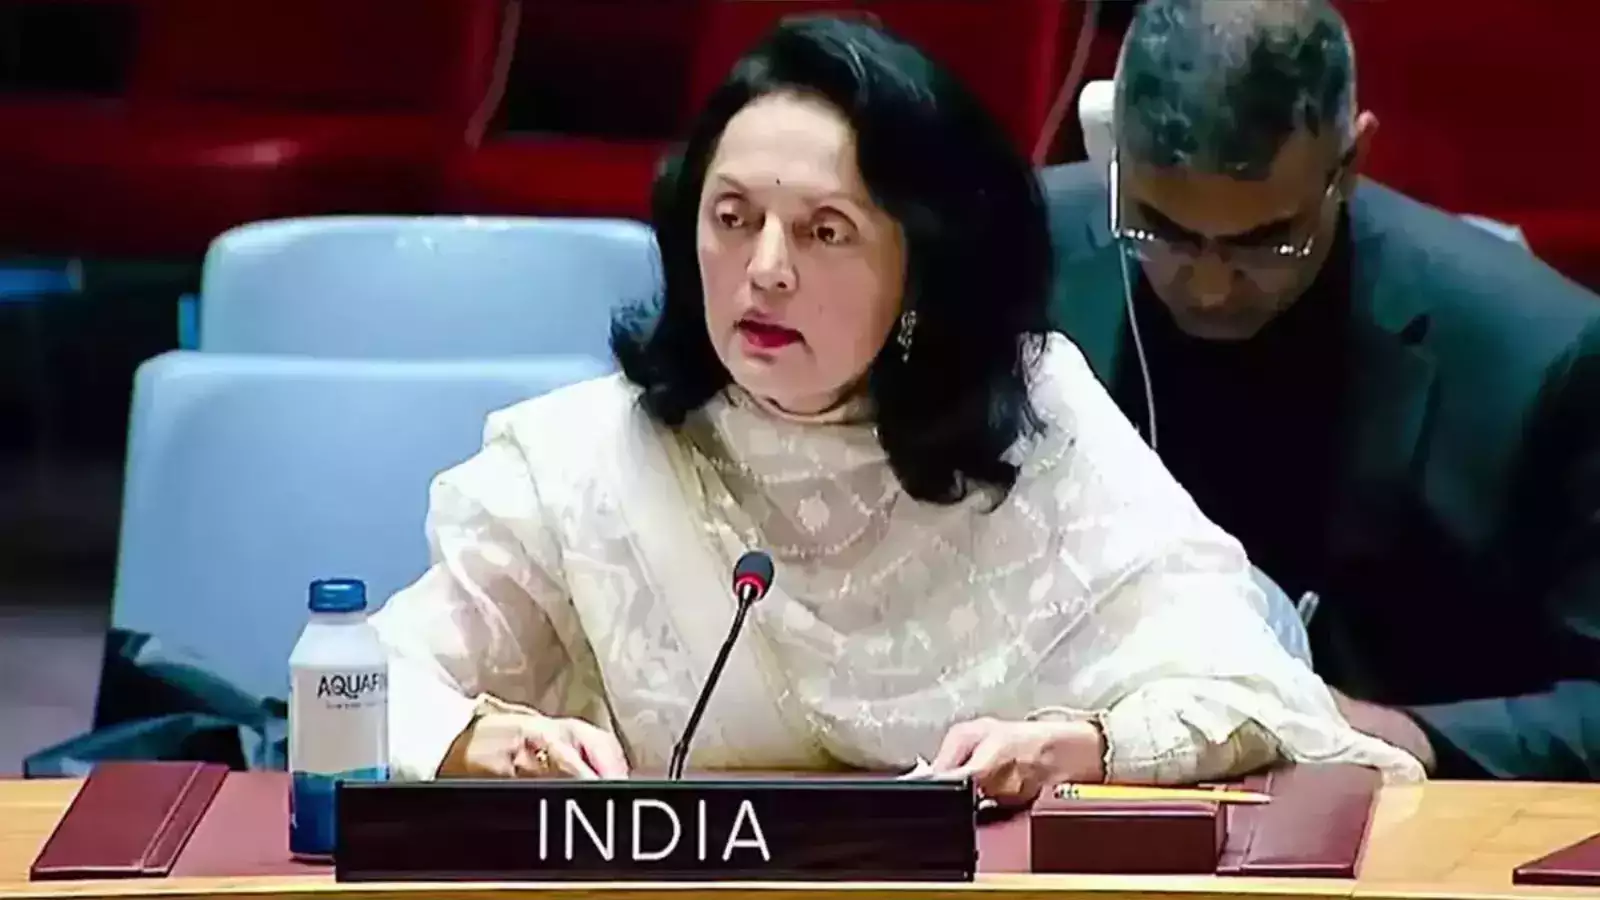 उम्मीद है कि संयुक्त राष्ट्र की सदस्यता के लिए फलस्तीन के आवेदन पर पुनर्विचार किया जाएगा: भारत